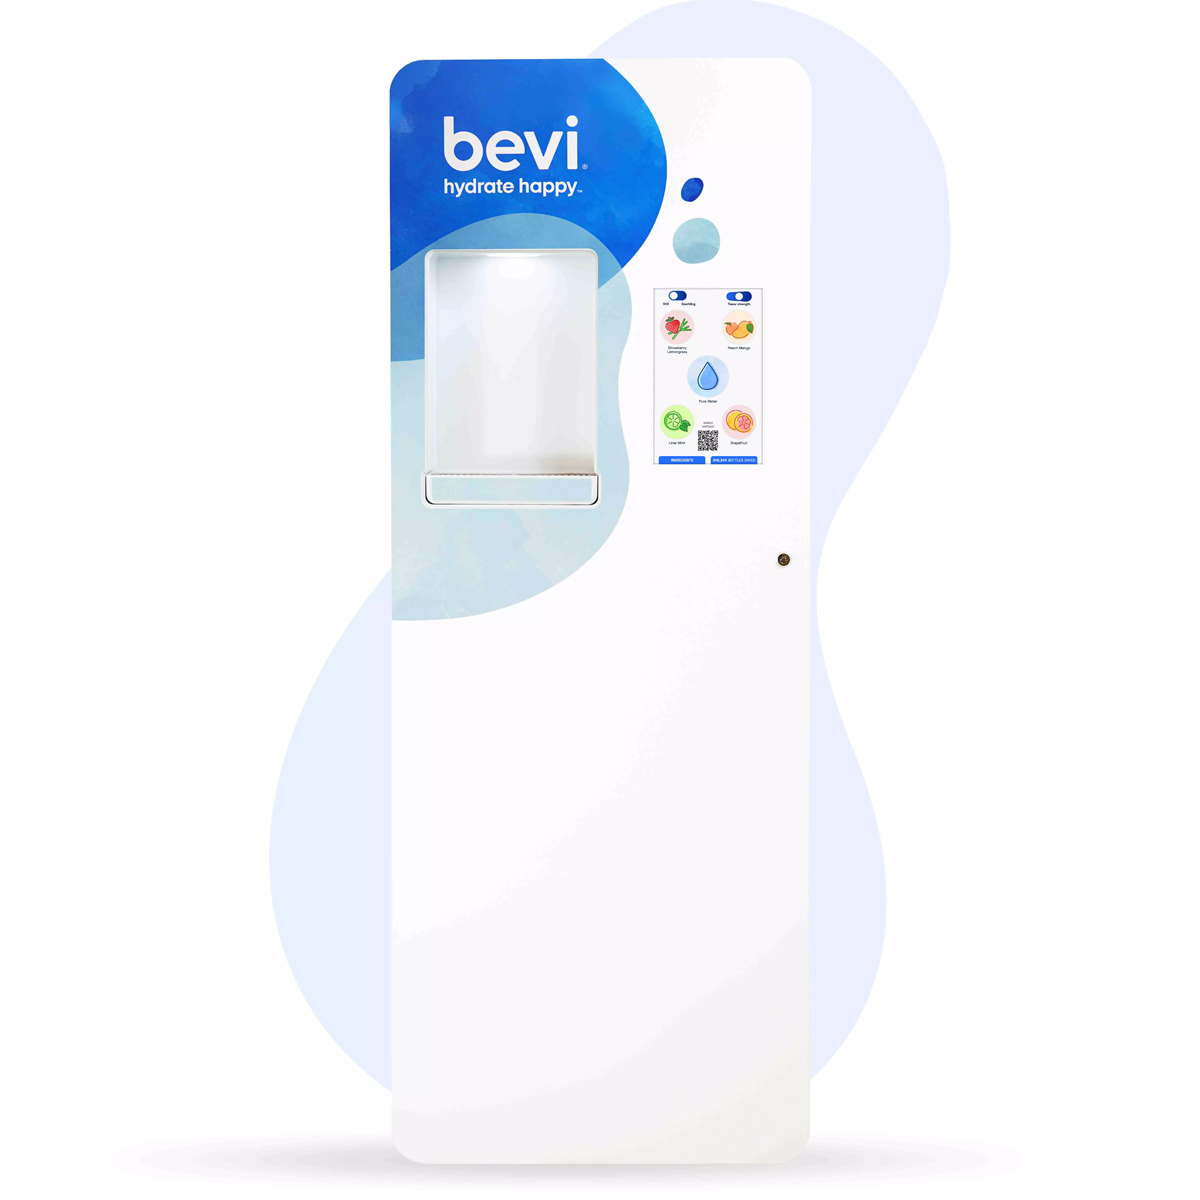 Standup Water Dispenser, The Standup 2.0 Bevi